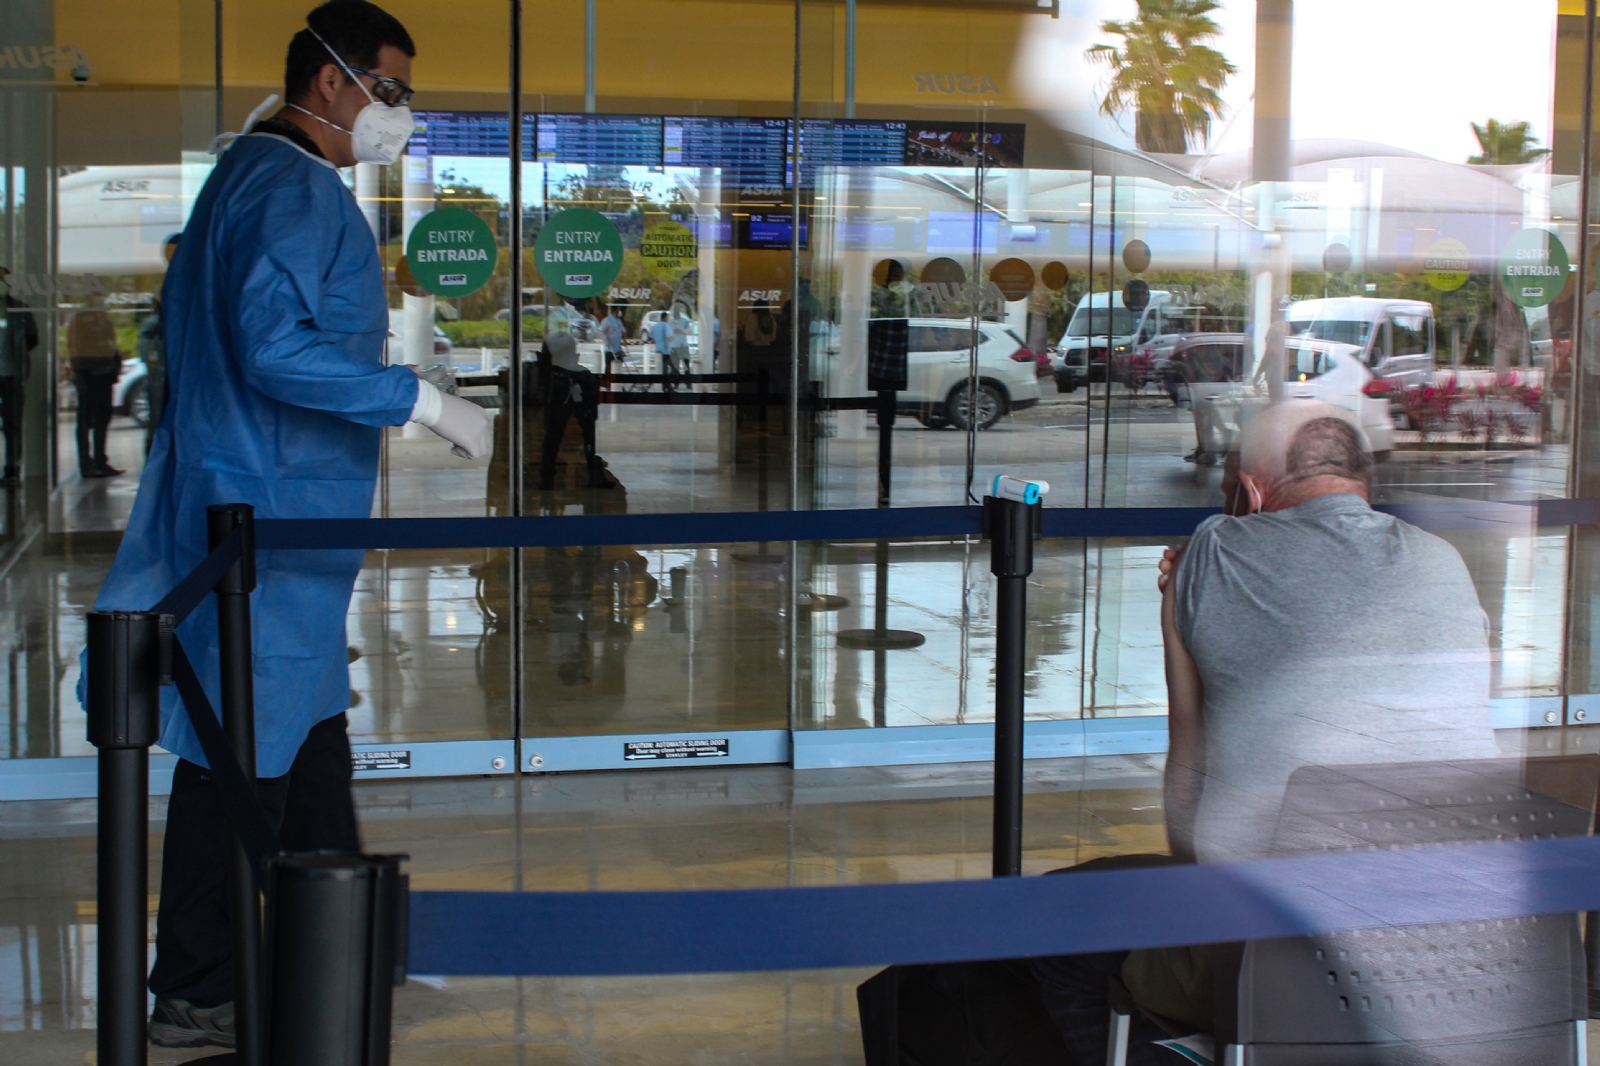 Fallan protocolos en aeropuerto de Cancún, turista alemán da positivo a COVID-19